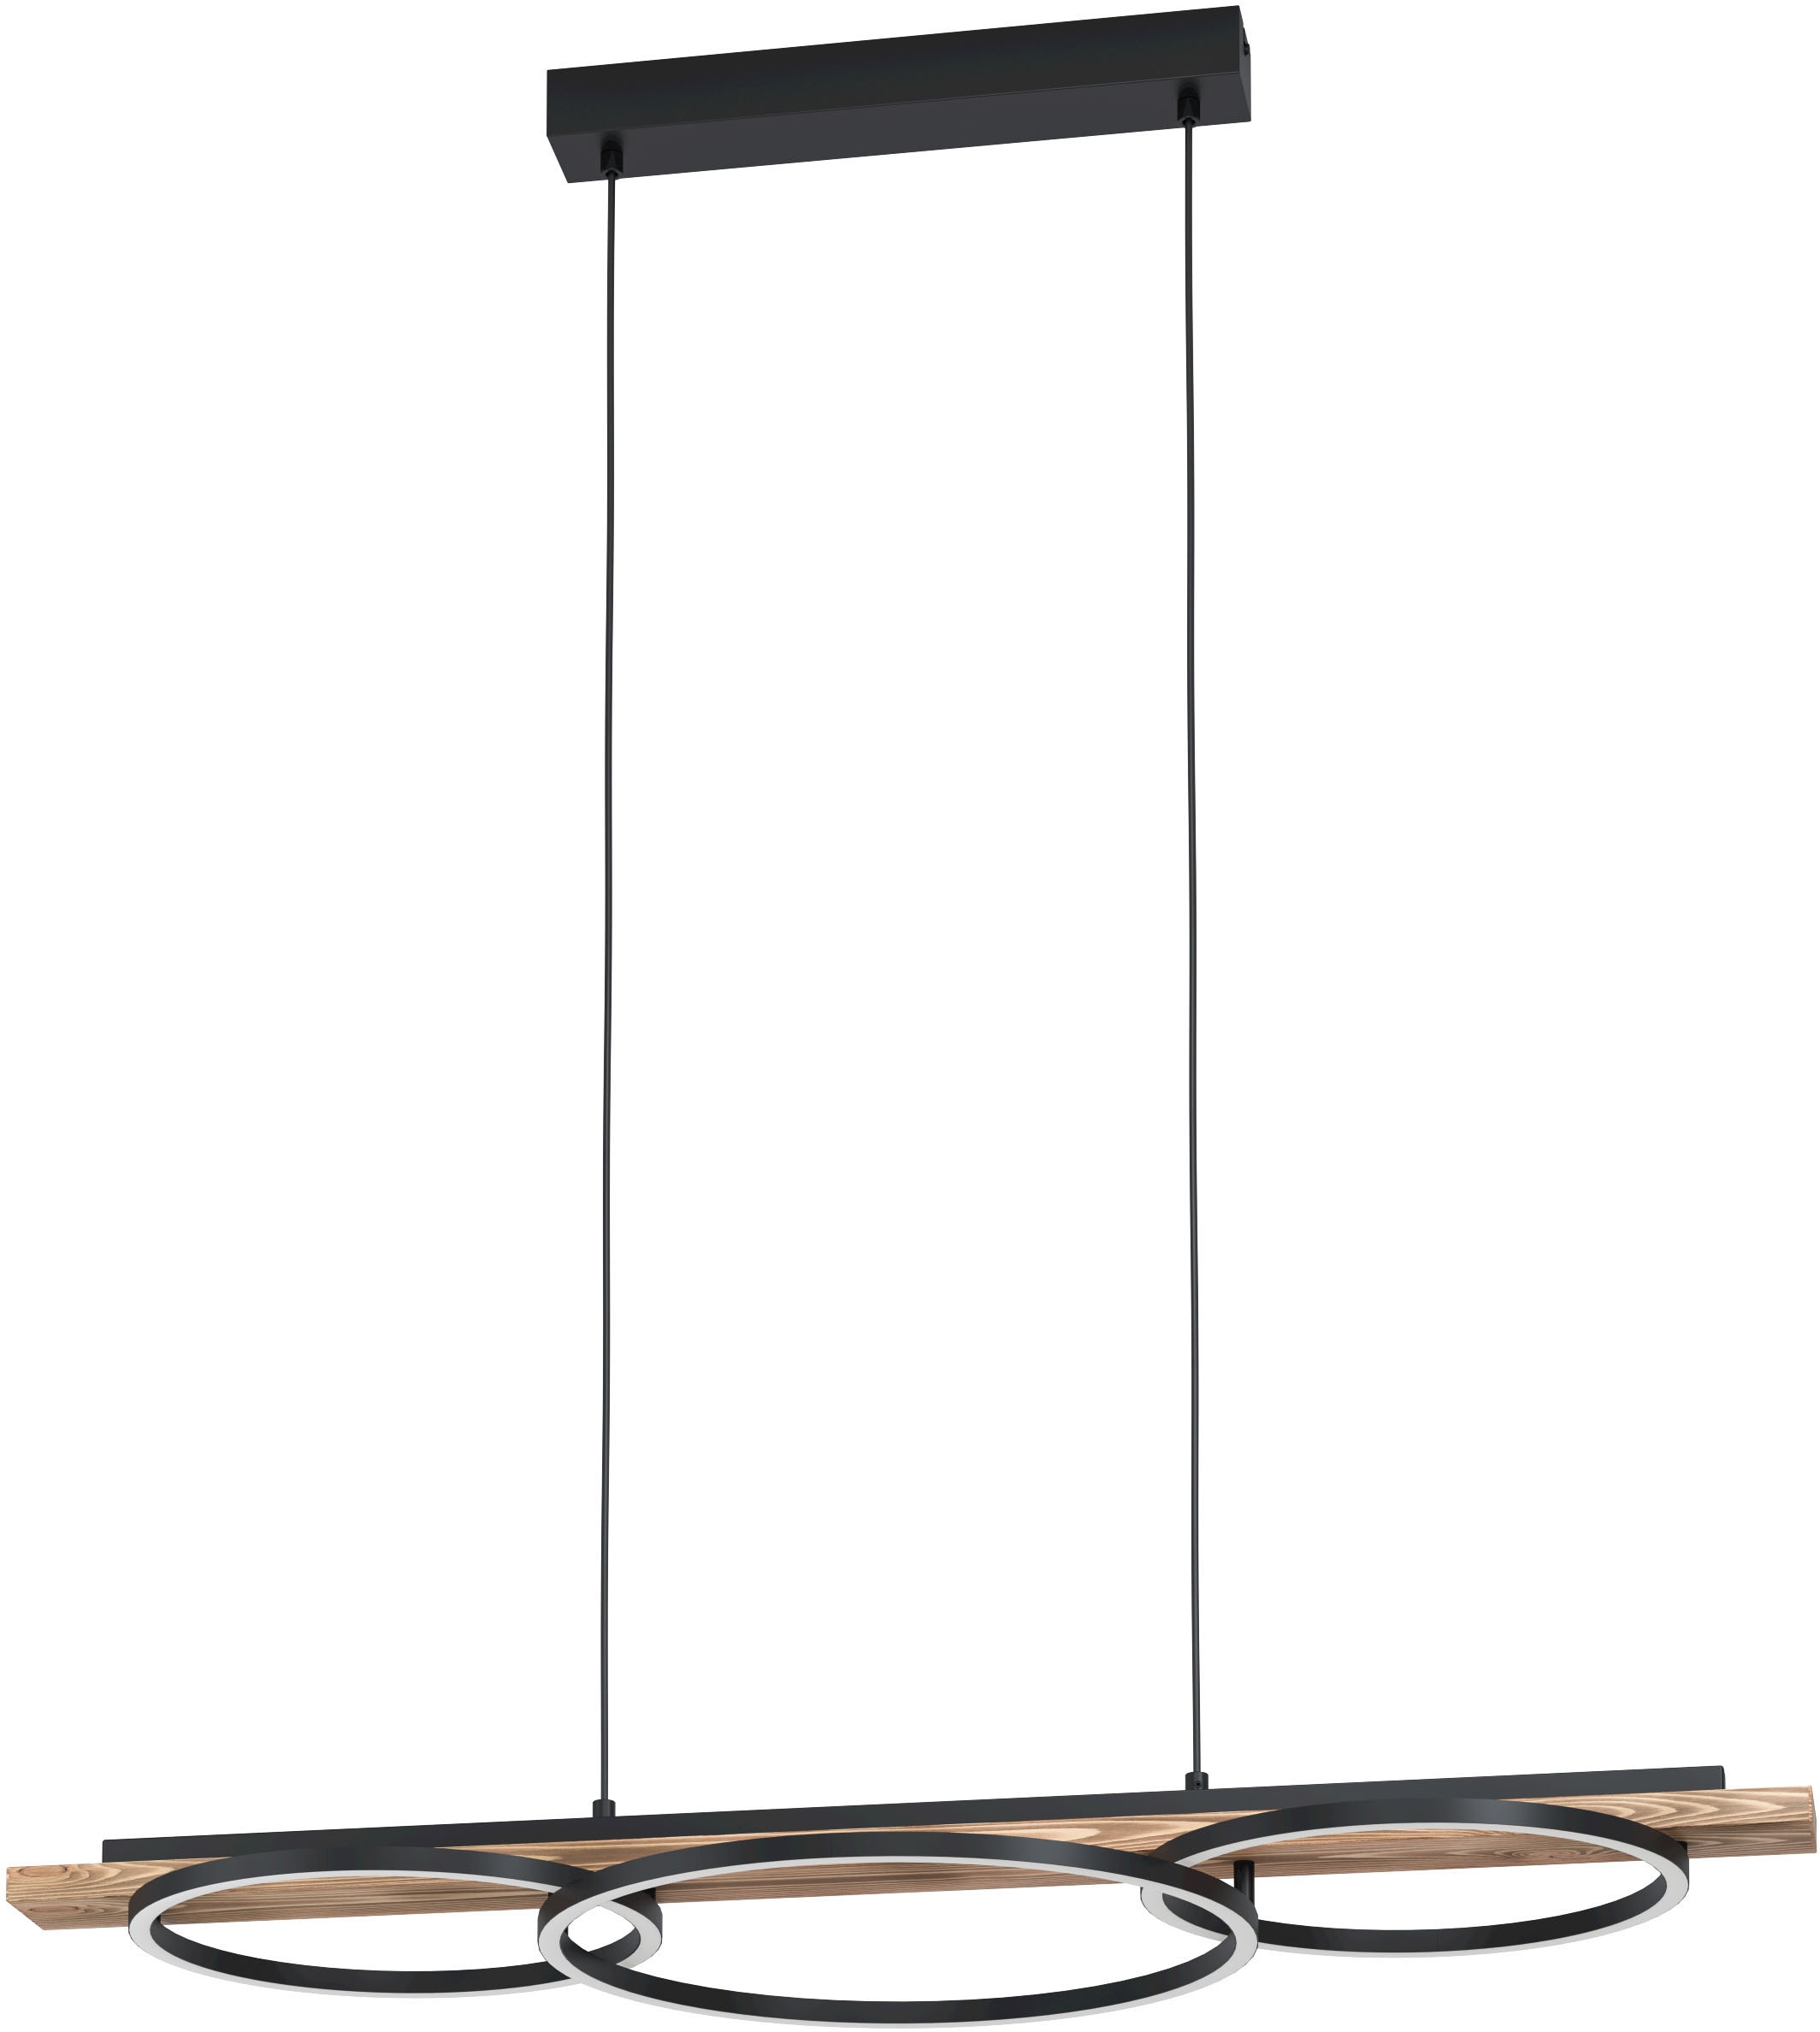 EGLO Hängeleuchte »BOYAL« in schwarz und rustikal aus Stahl, Holz, inkl. LED fest integriert - 2 x 12,5 Watt und 1 x 15,5 Watt, warmweiß